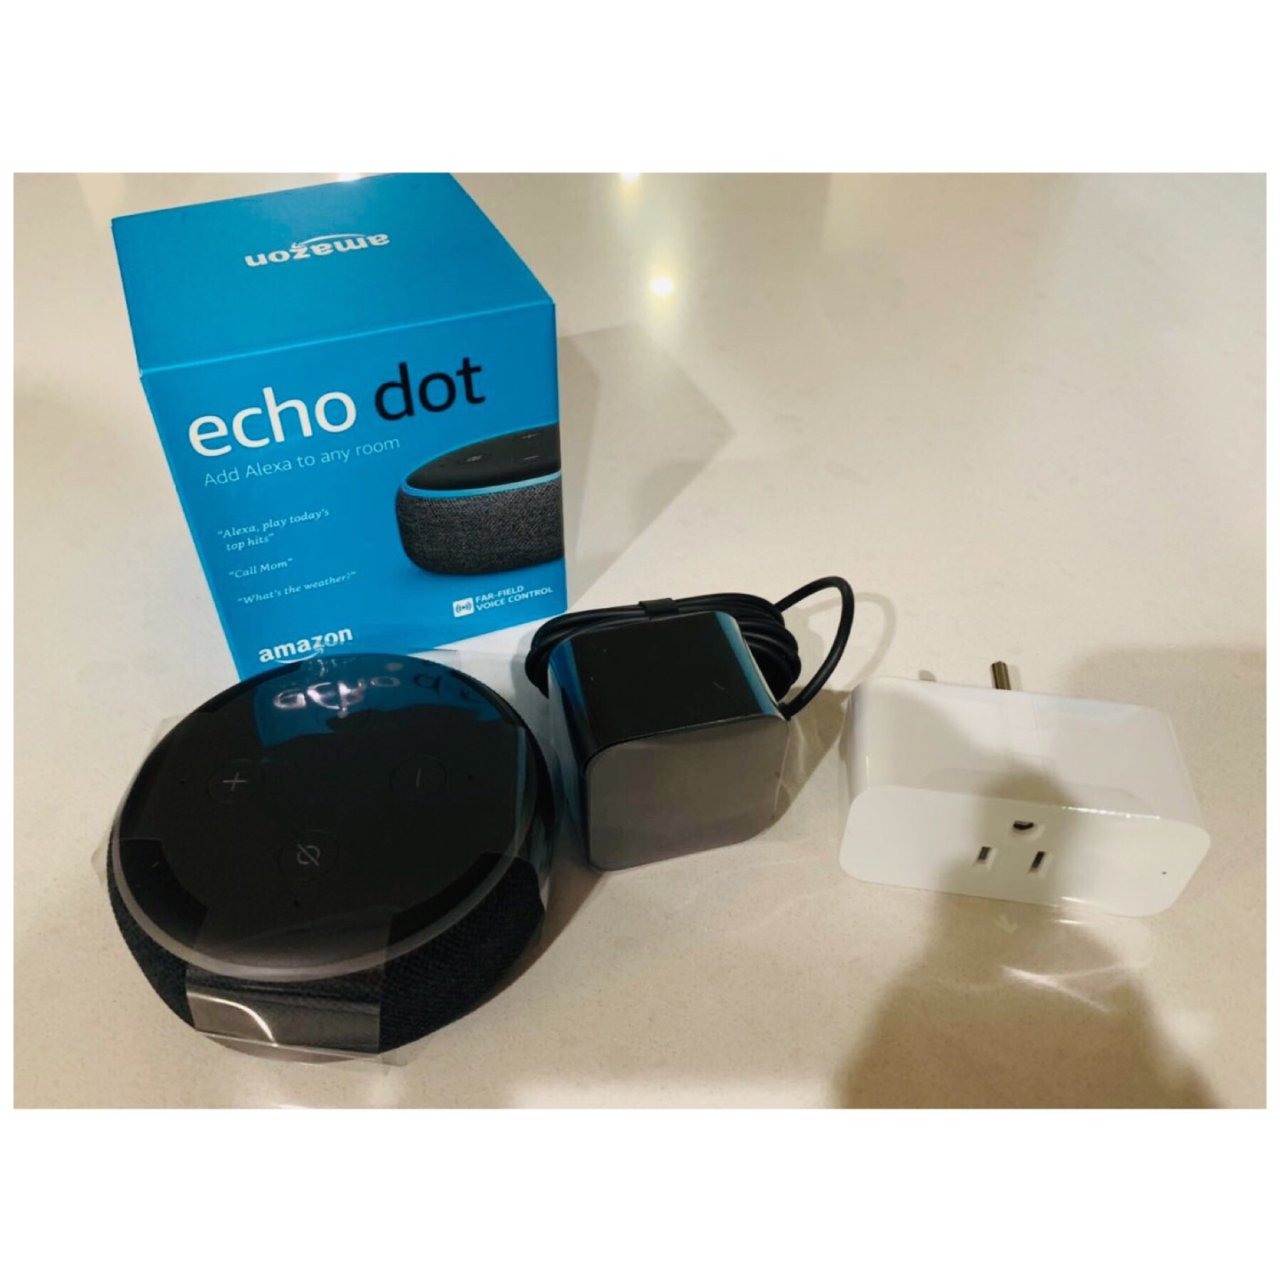 echo dot,智能插座